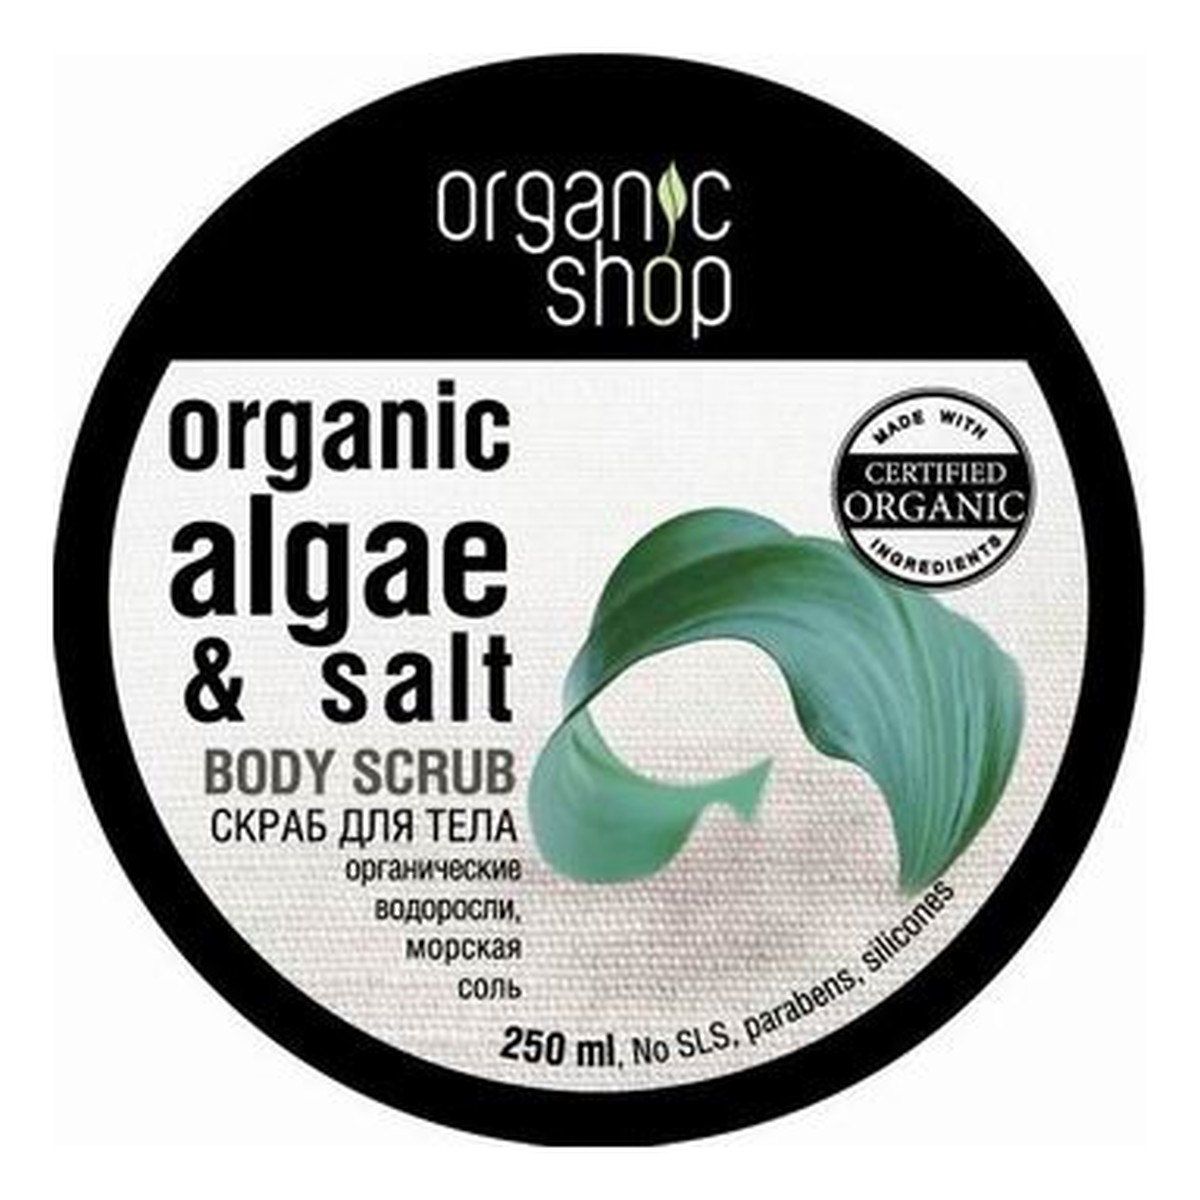 Organic Shop Atlantyckie Wodorosty Organiczny Scrub Do Ciała 250ml